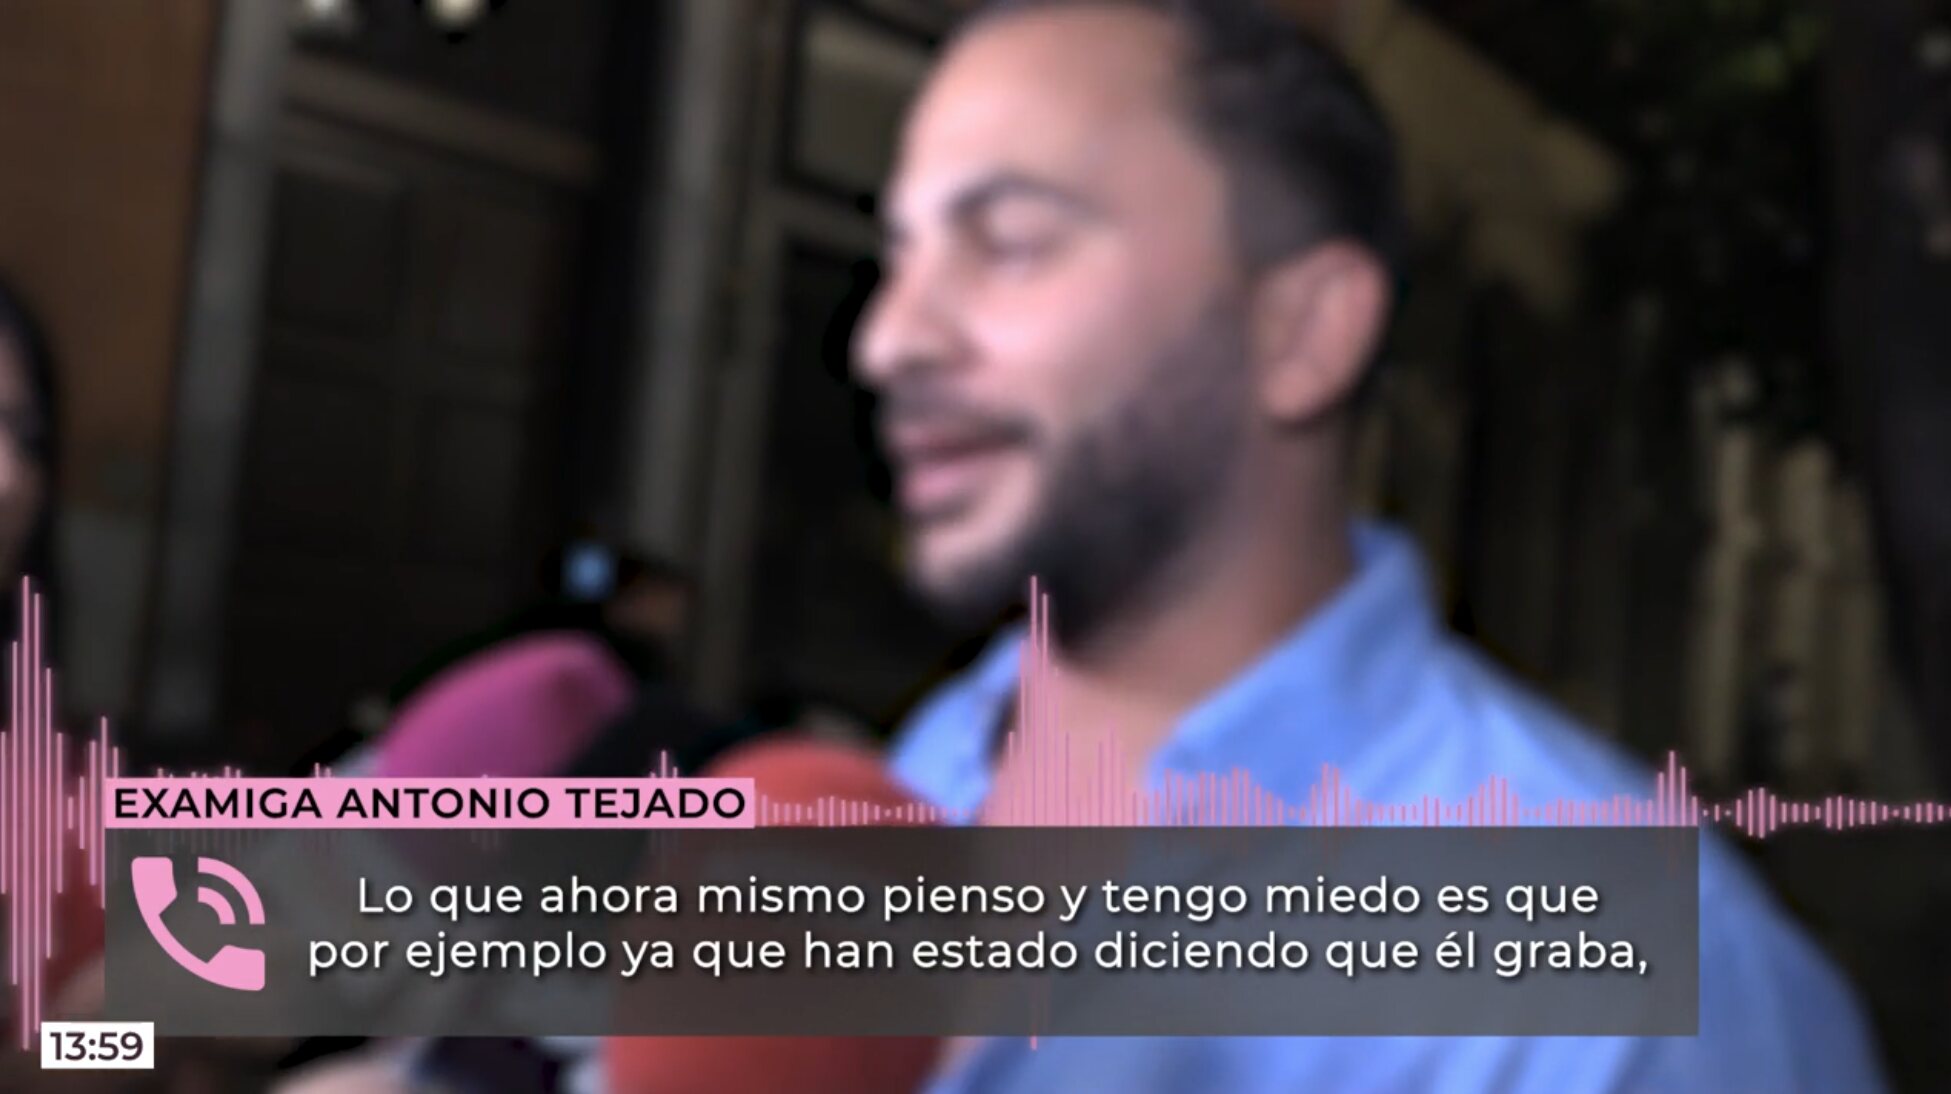 La examiga de Antonio Tejado tiene miedo de que la grabase dormiga | Foto: Telecinco.es